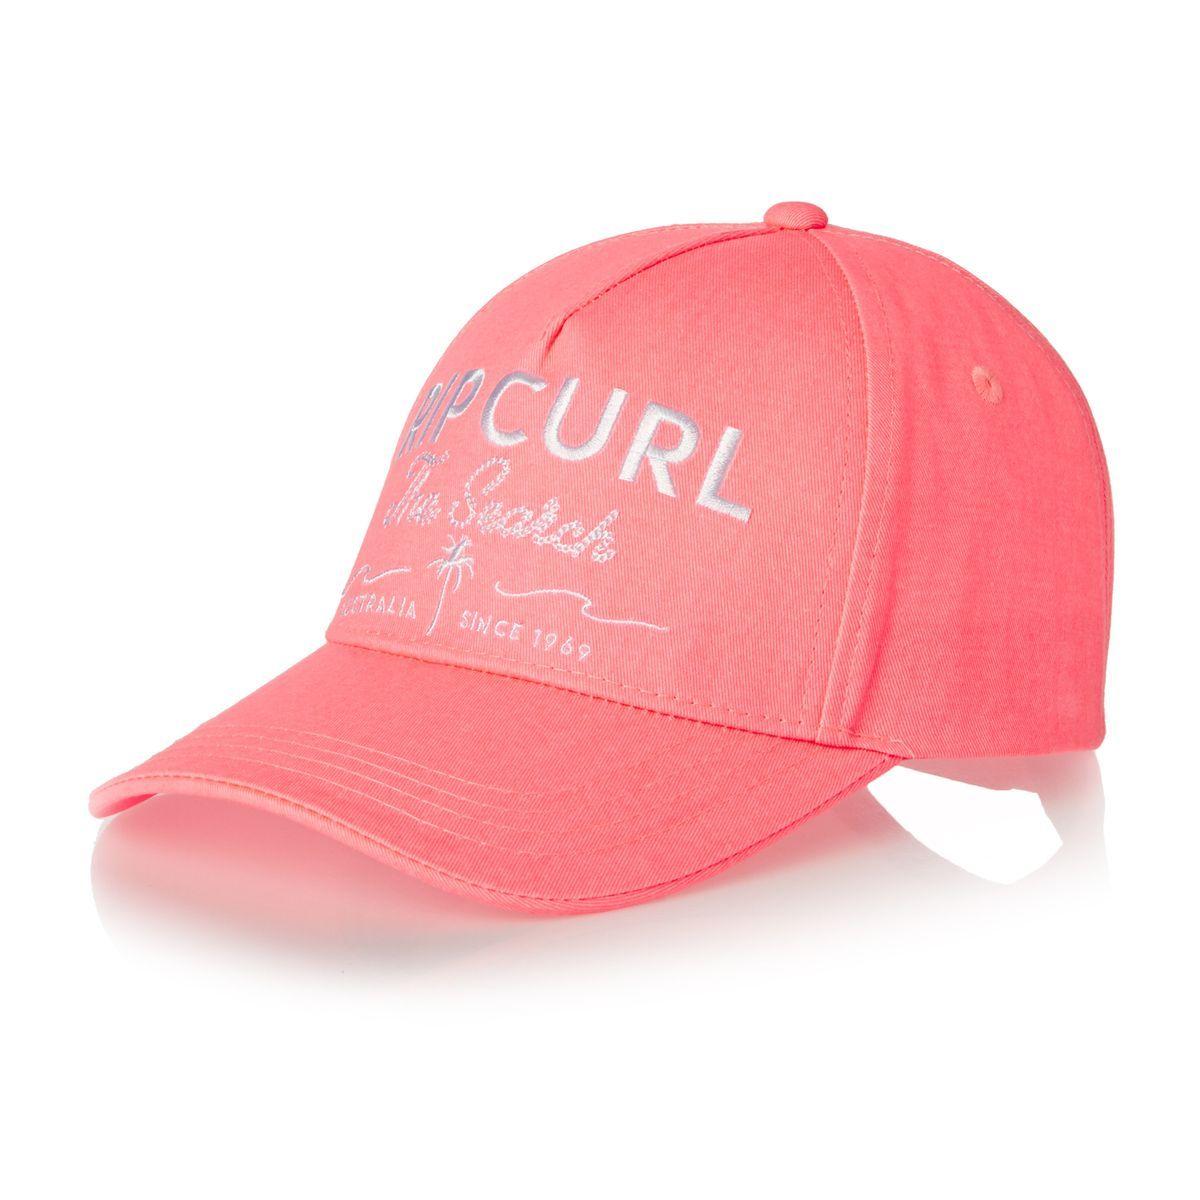 Red Curl Logo - Rip Curl Caps - Rip Curl Logo Cap - Creamsicle